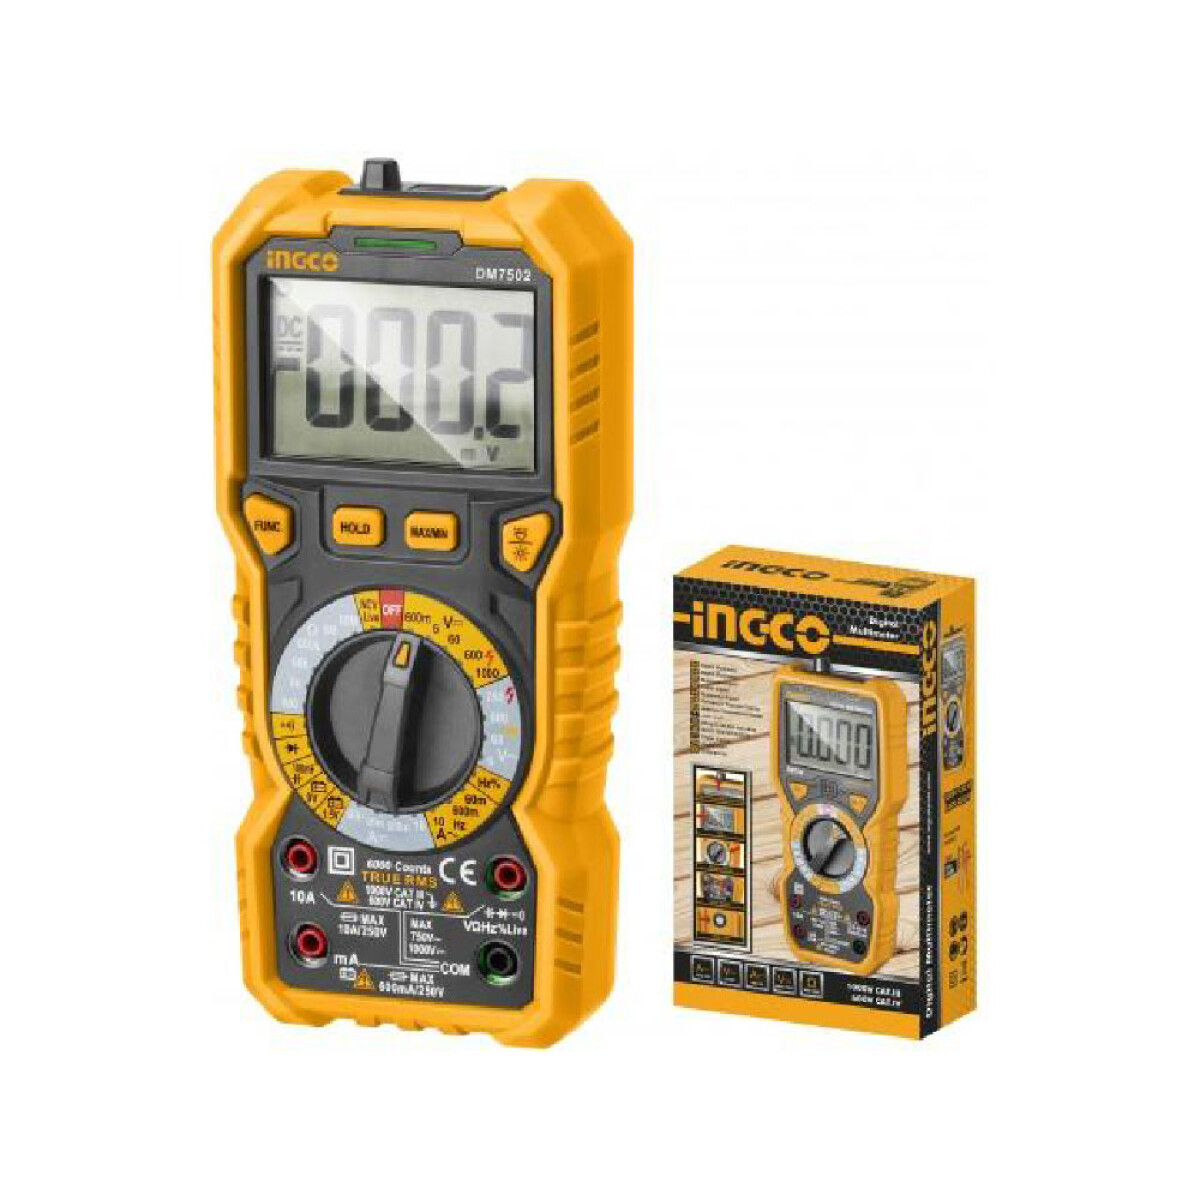 Tester Multímetro Digital Medidor Electricidad Ingco DM7502 - Amarillo 